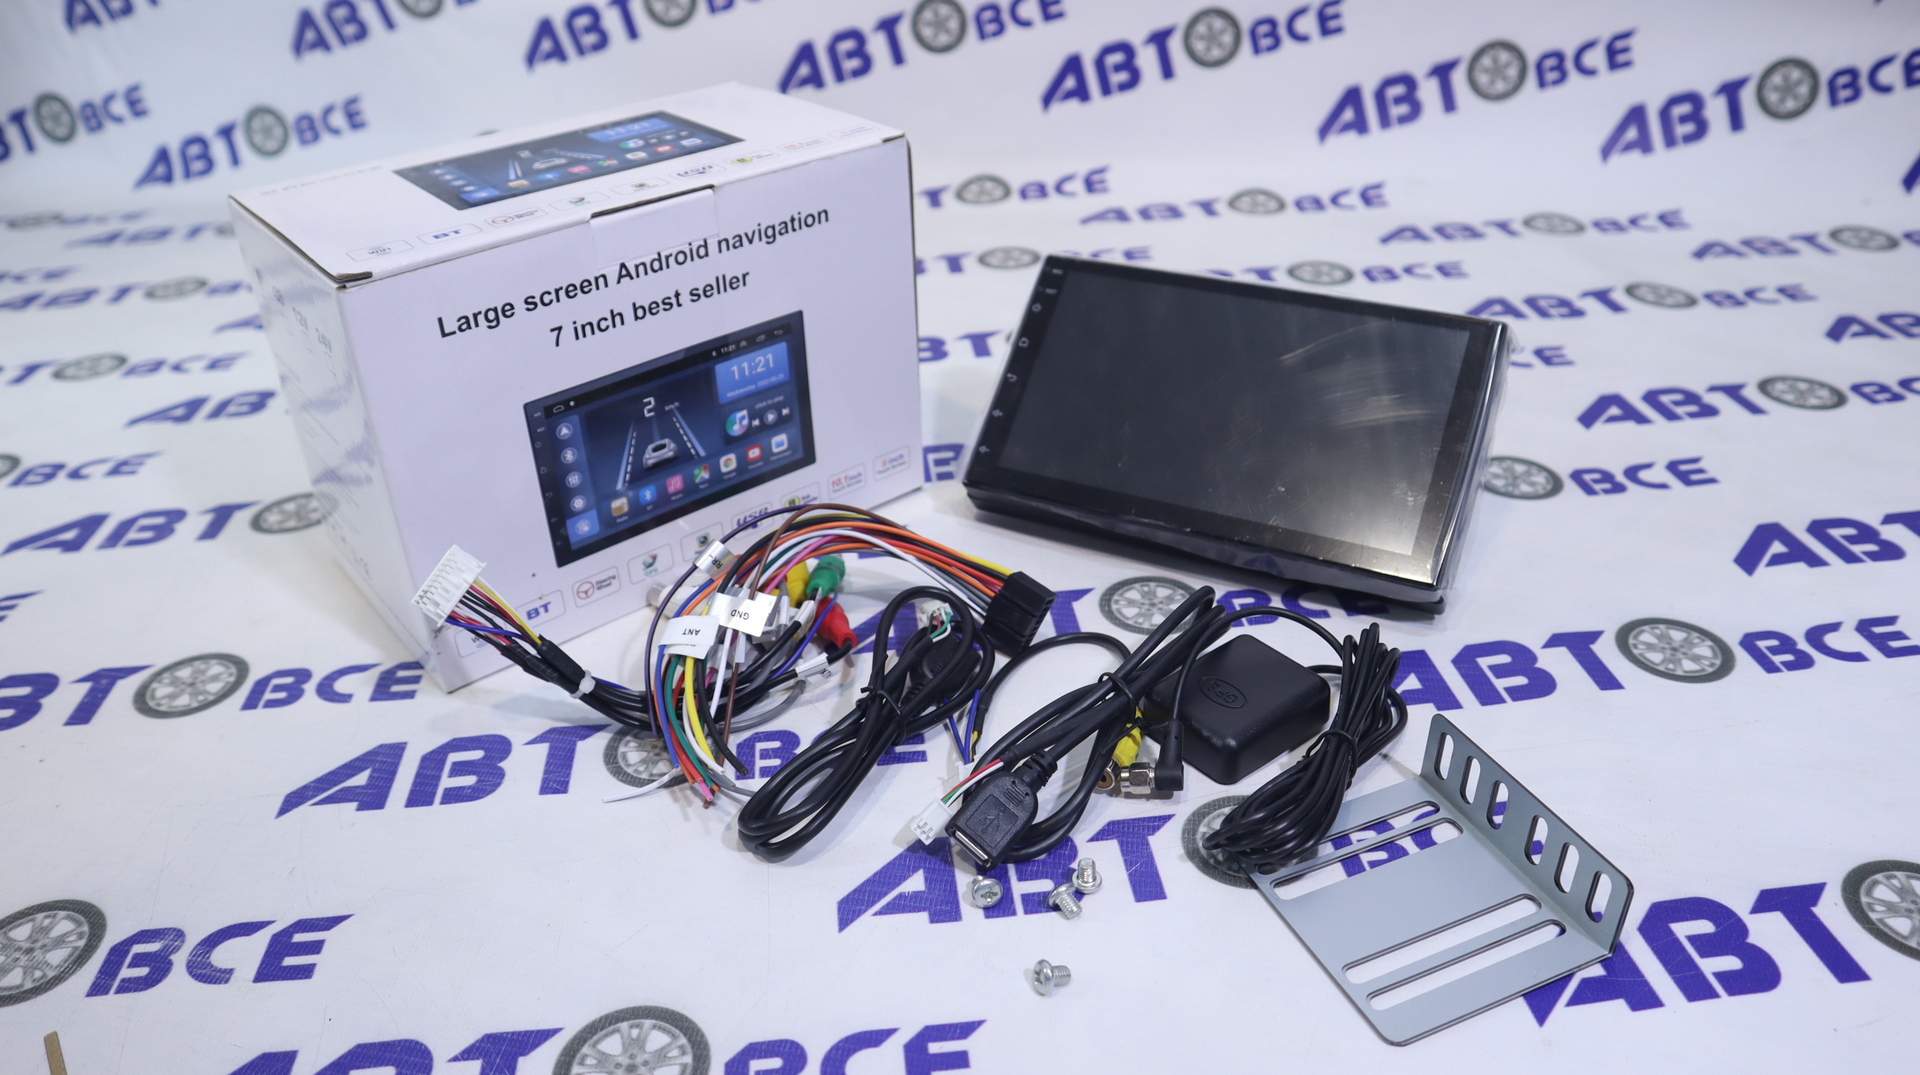 Автомагнитола (магнитофон) 2din черная (USB/BT/SD/FM/AUX/RDS/GPS/AM) Android 10.0 ОП 2Гб+32Гб 7